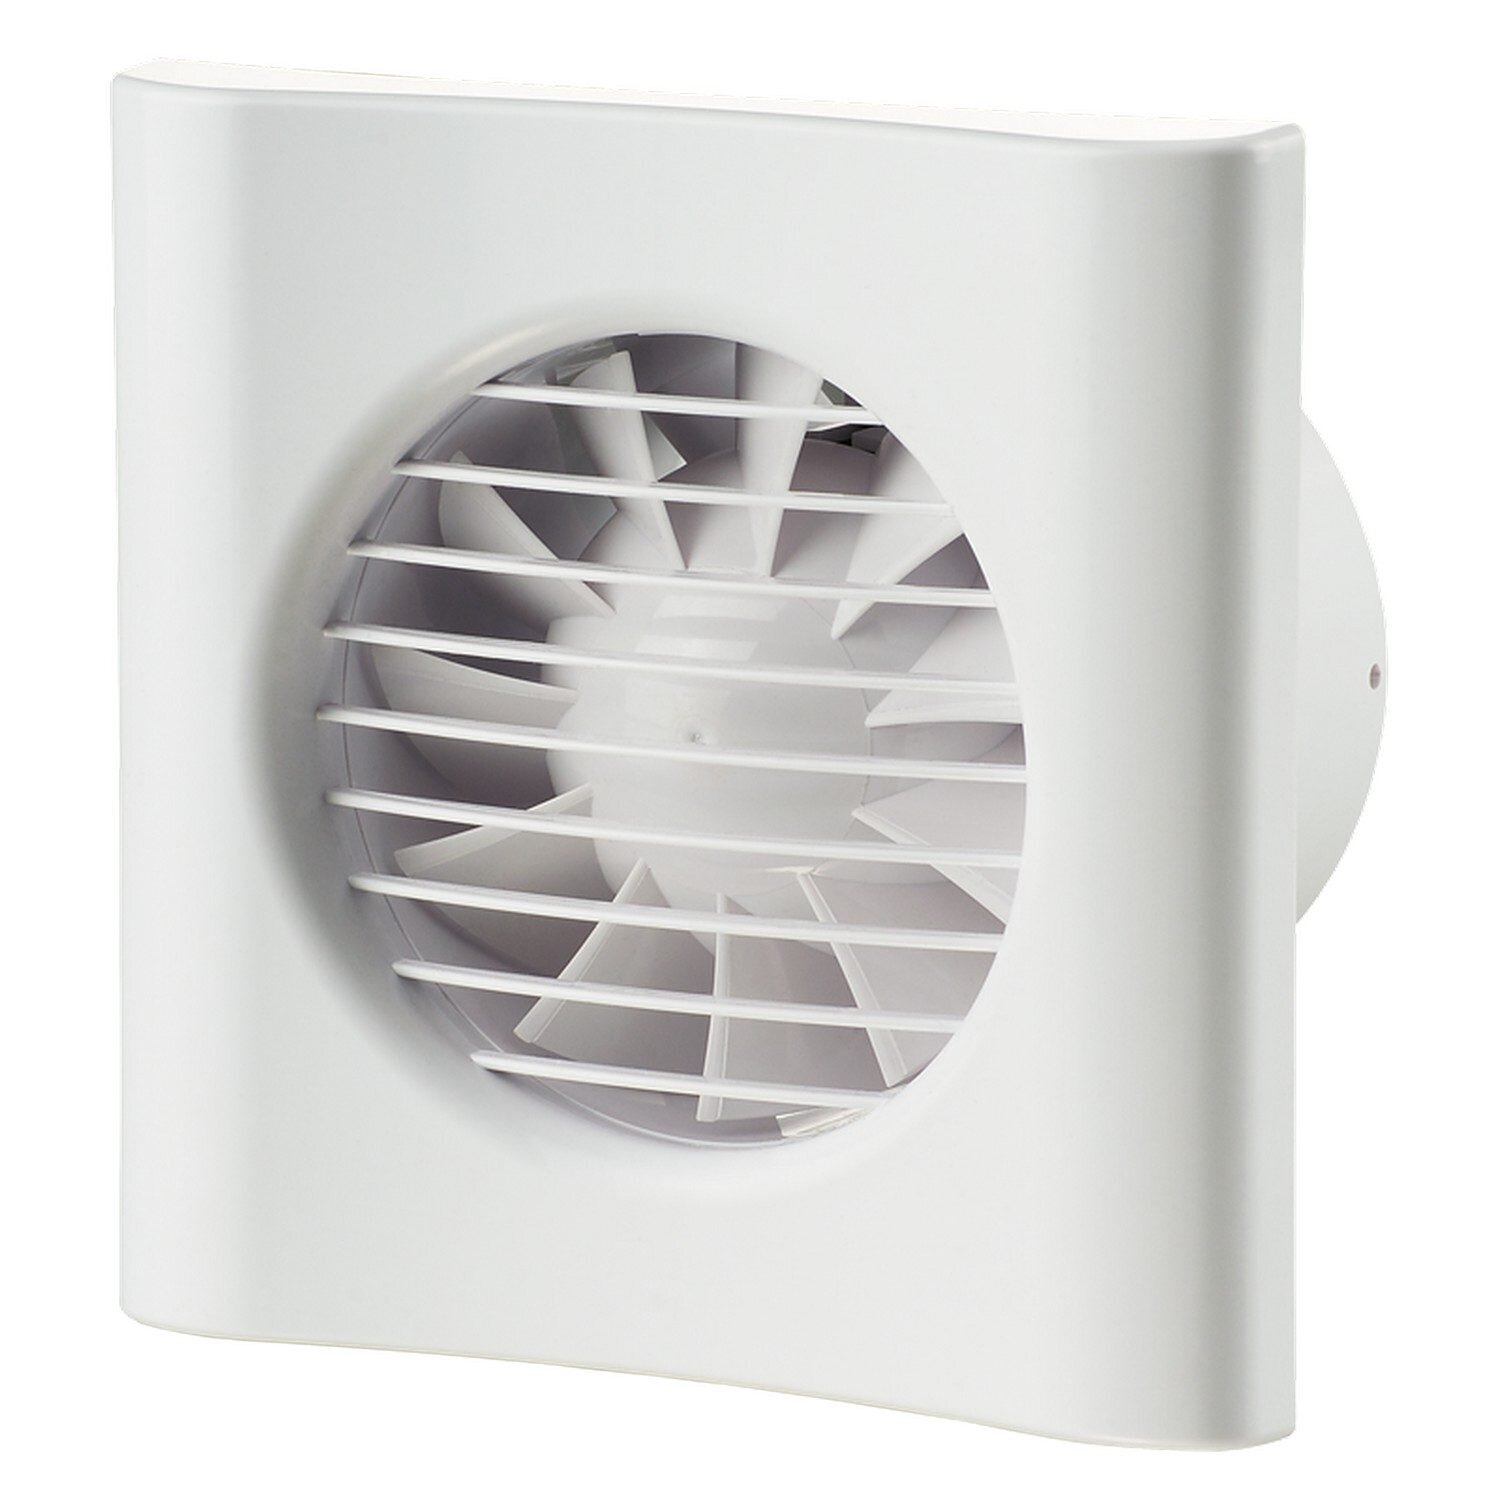 Вентиляторы для вытяжки бесшумные: Бесшумные вентиляторы в ванную комнату